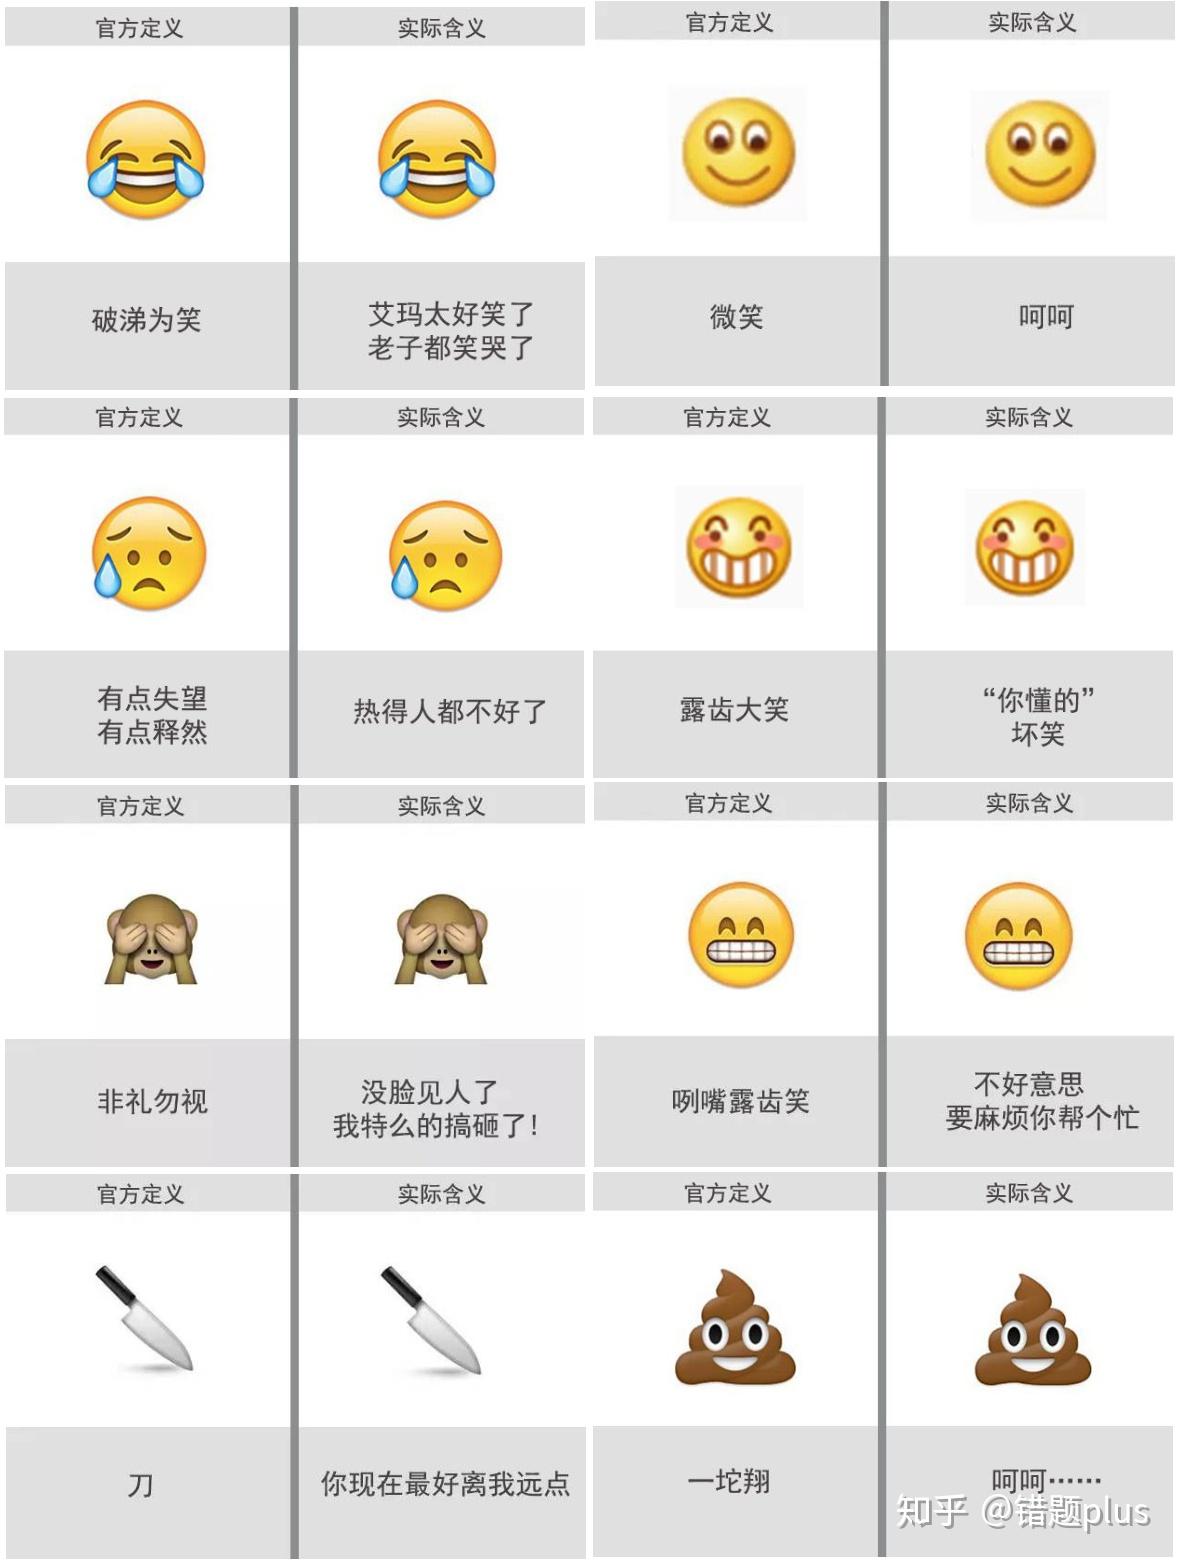 42种常见微信表情包情绪用英语应该怎么表达